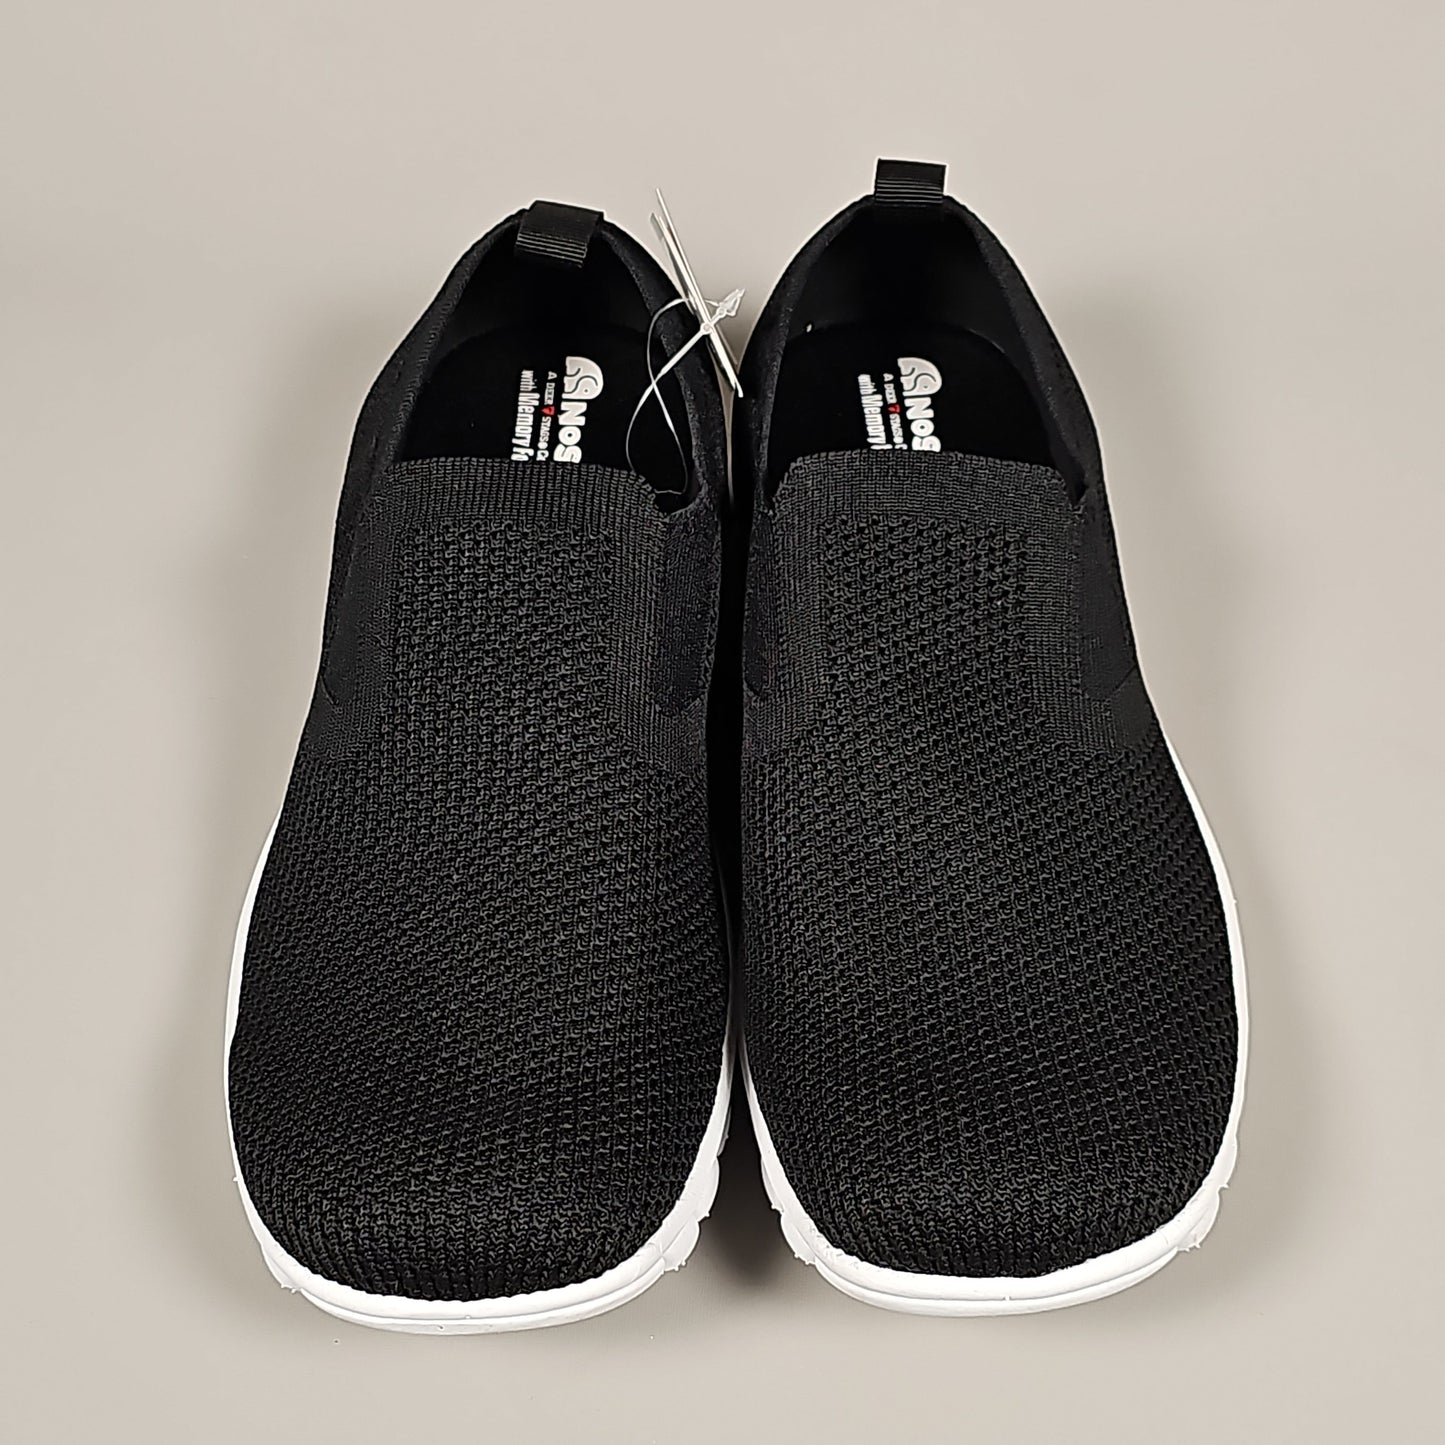 DEER STAGS Eddy Men's Slip-On Shoe Sneaker Sz 8.5 Black (New)